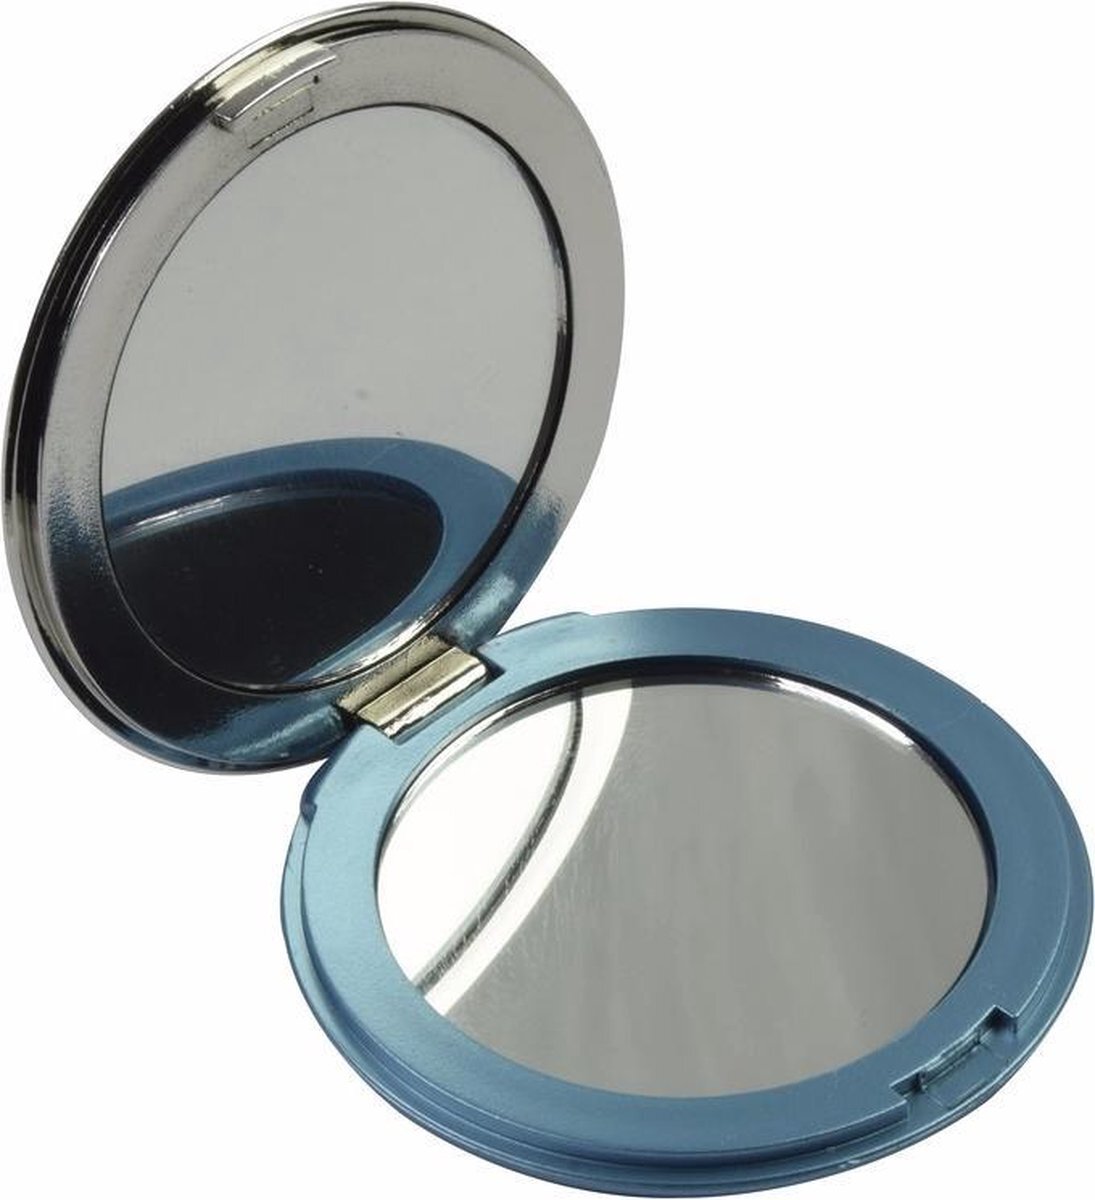 Bellat Zak spiegeltje blauw - make up spiegel